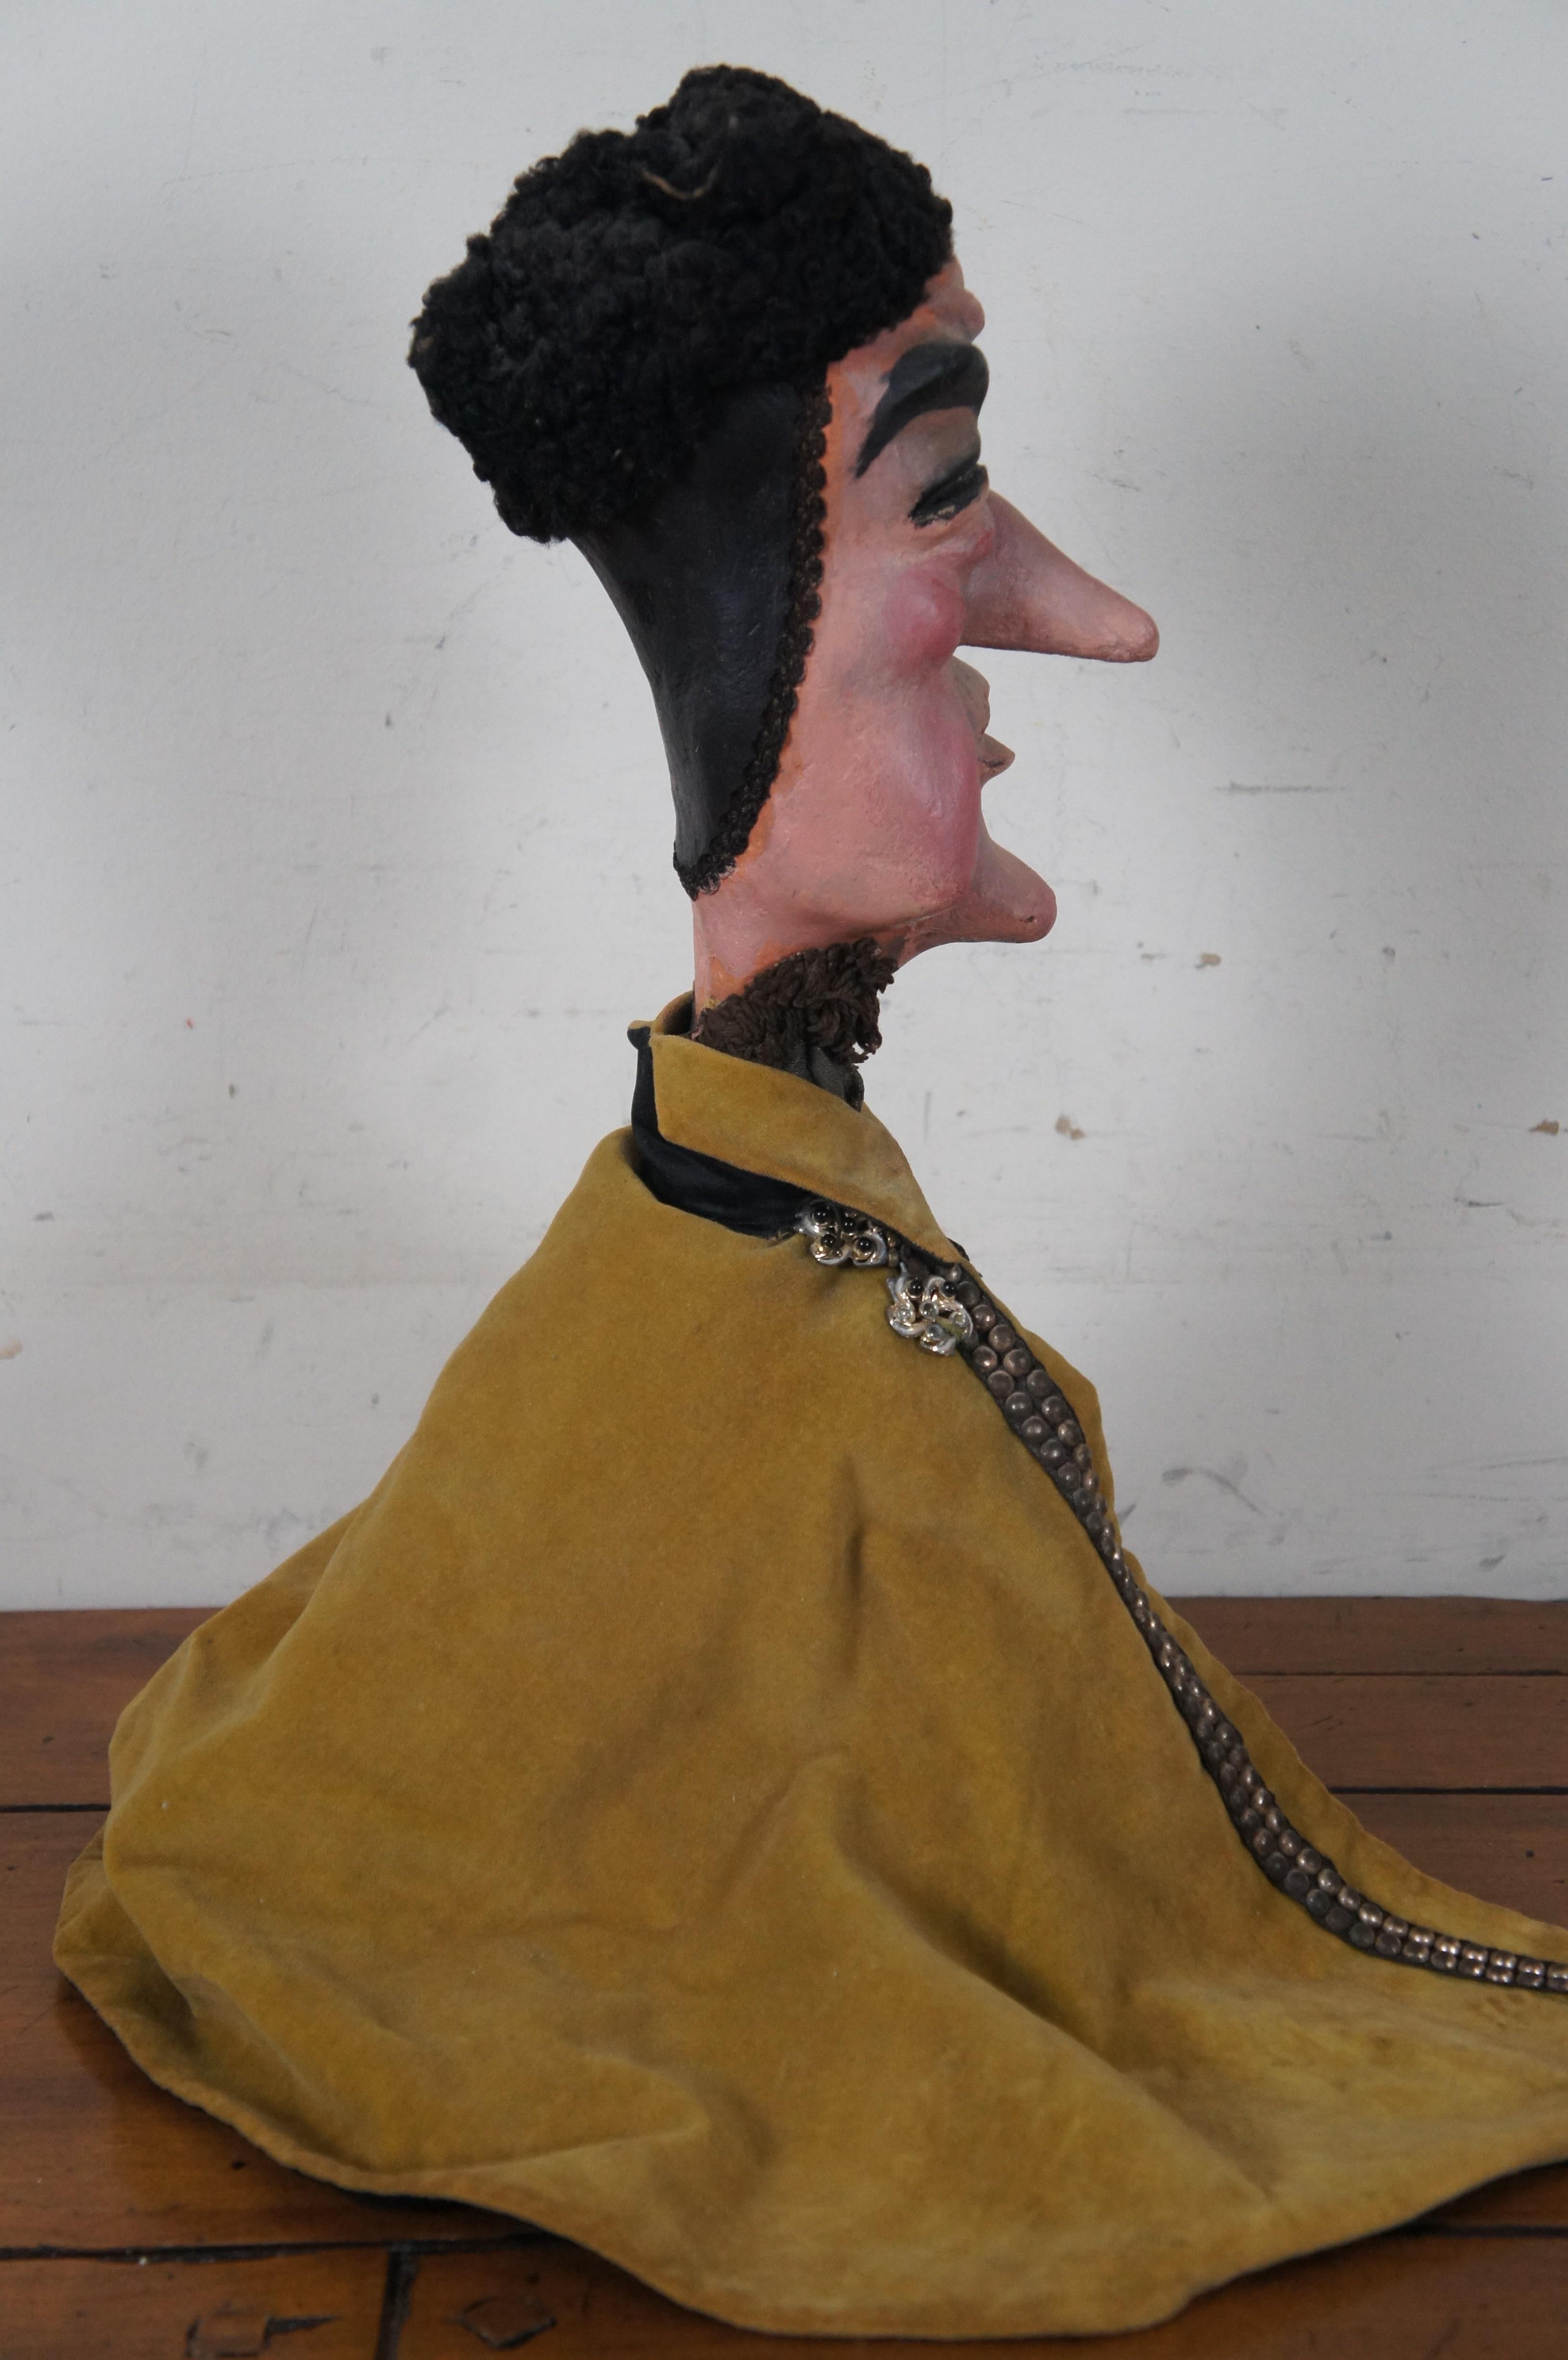 Fabric Antique Hand Made Paper Mache Hand Puppet & Stand Folk Art Doll Sculpture